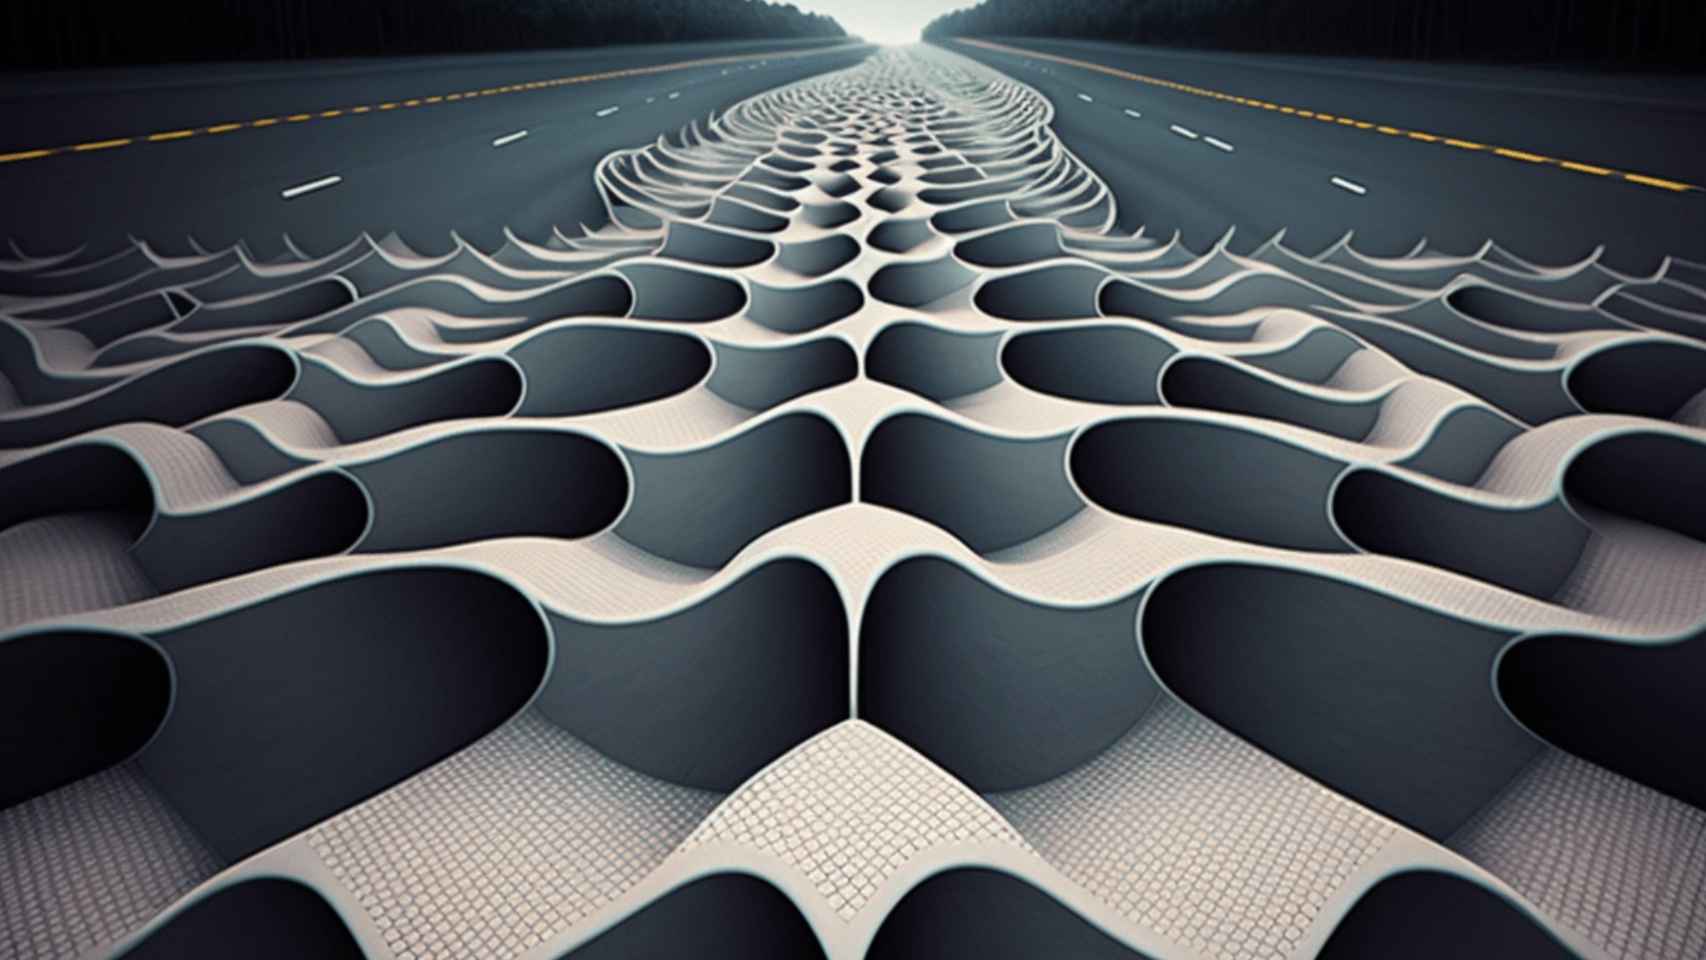 Arte conceptual del nuevo hormigón metamaterial en una carretera.